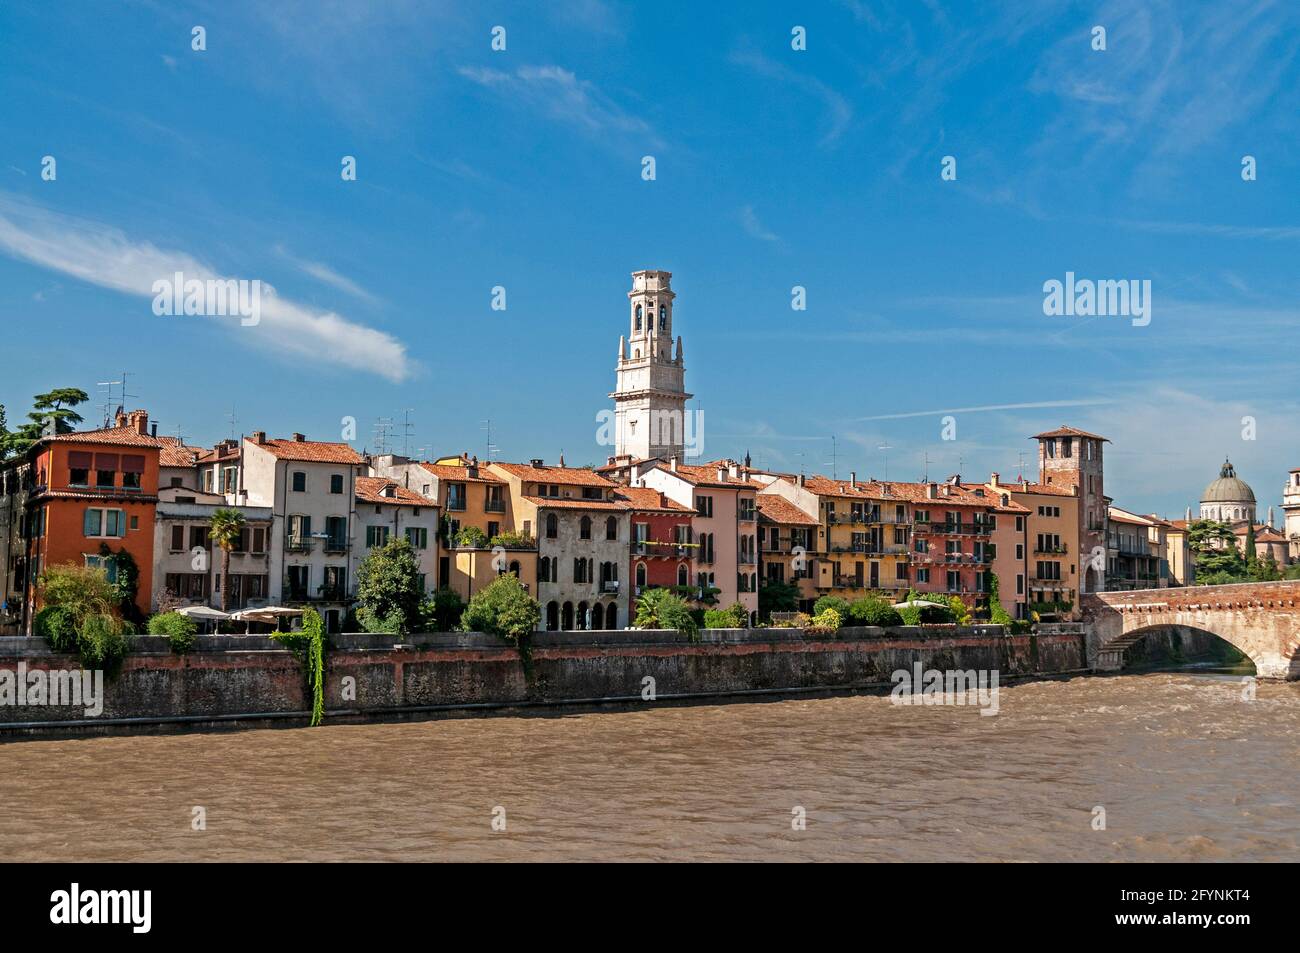 Horizonte de la ciudad medieval de Verona sobre el río Adige, (Fiume Adige) en la región de Veneto, al norte de Italia. Foto de stock